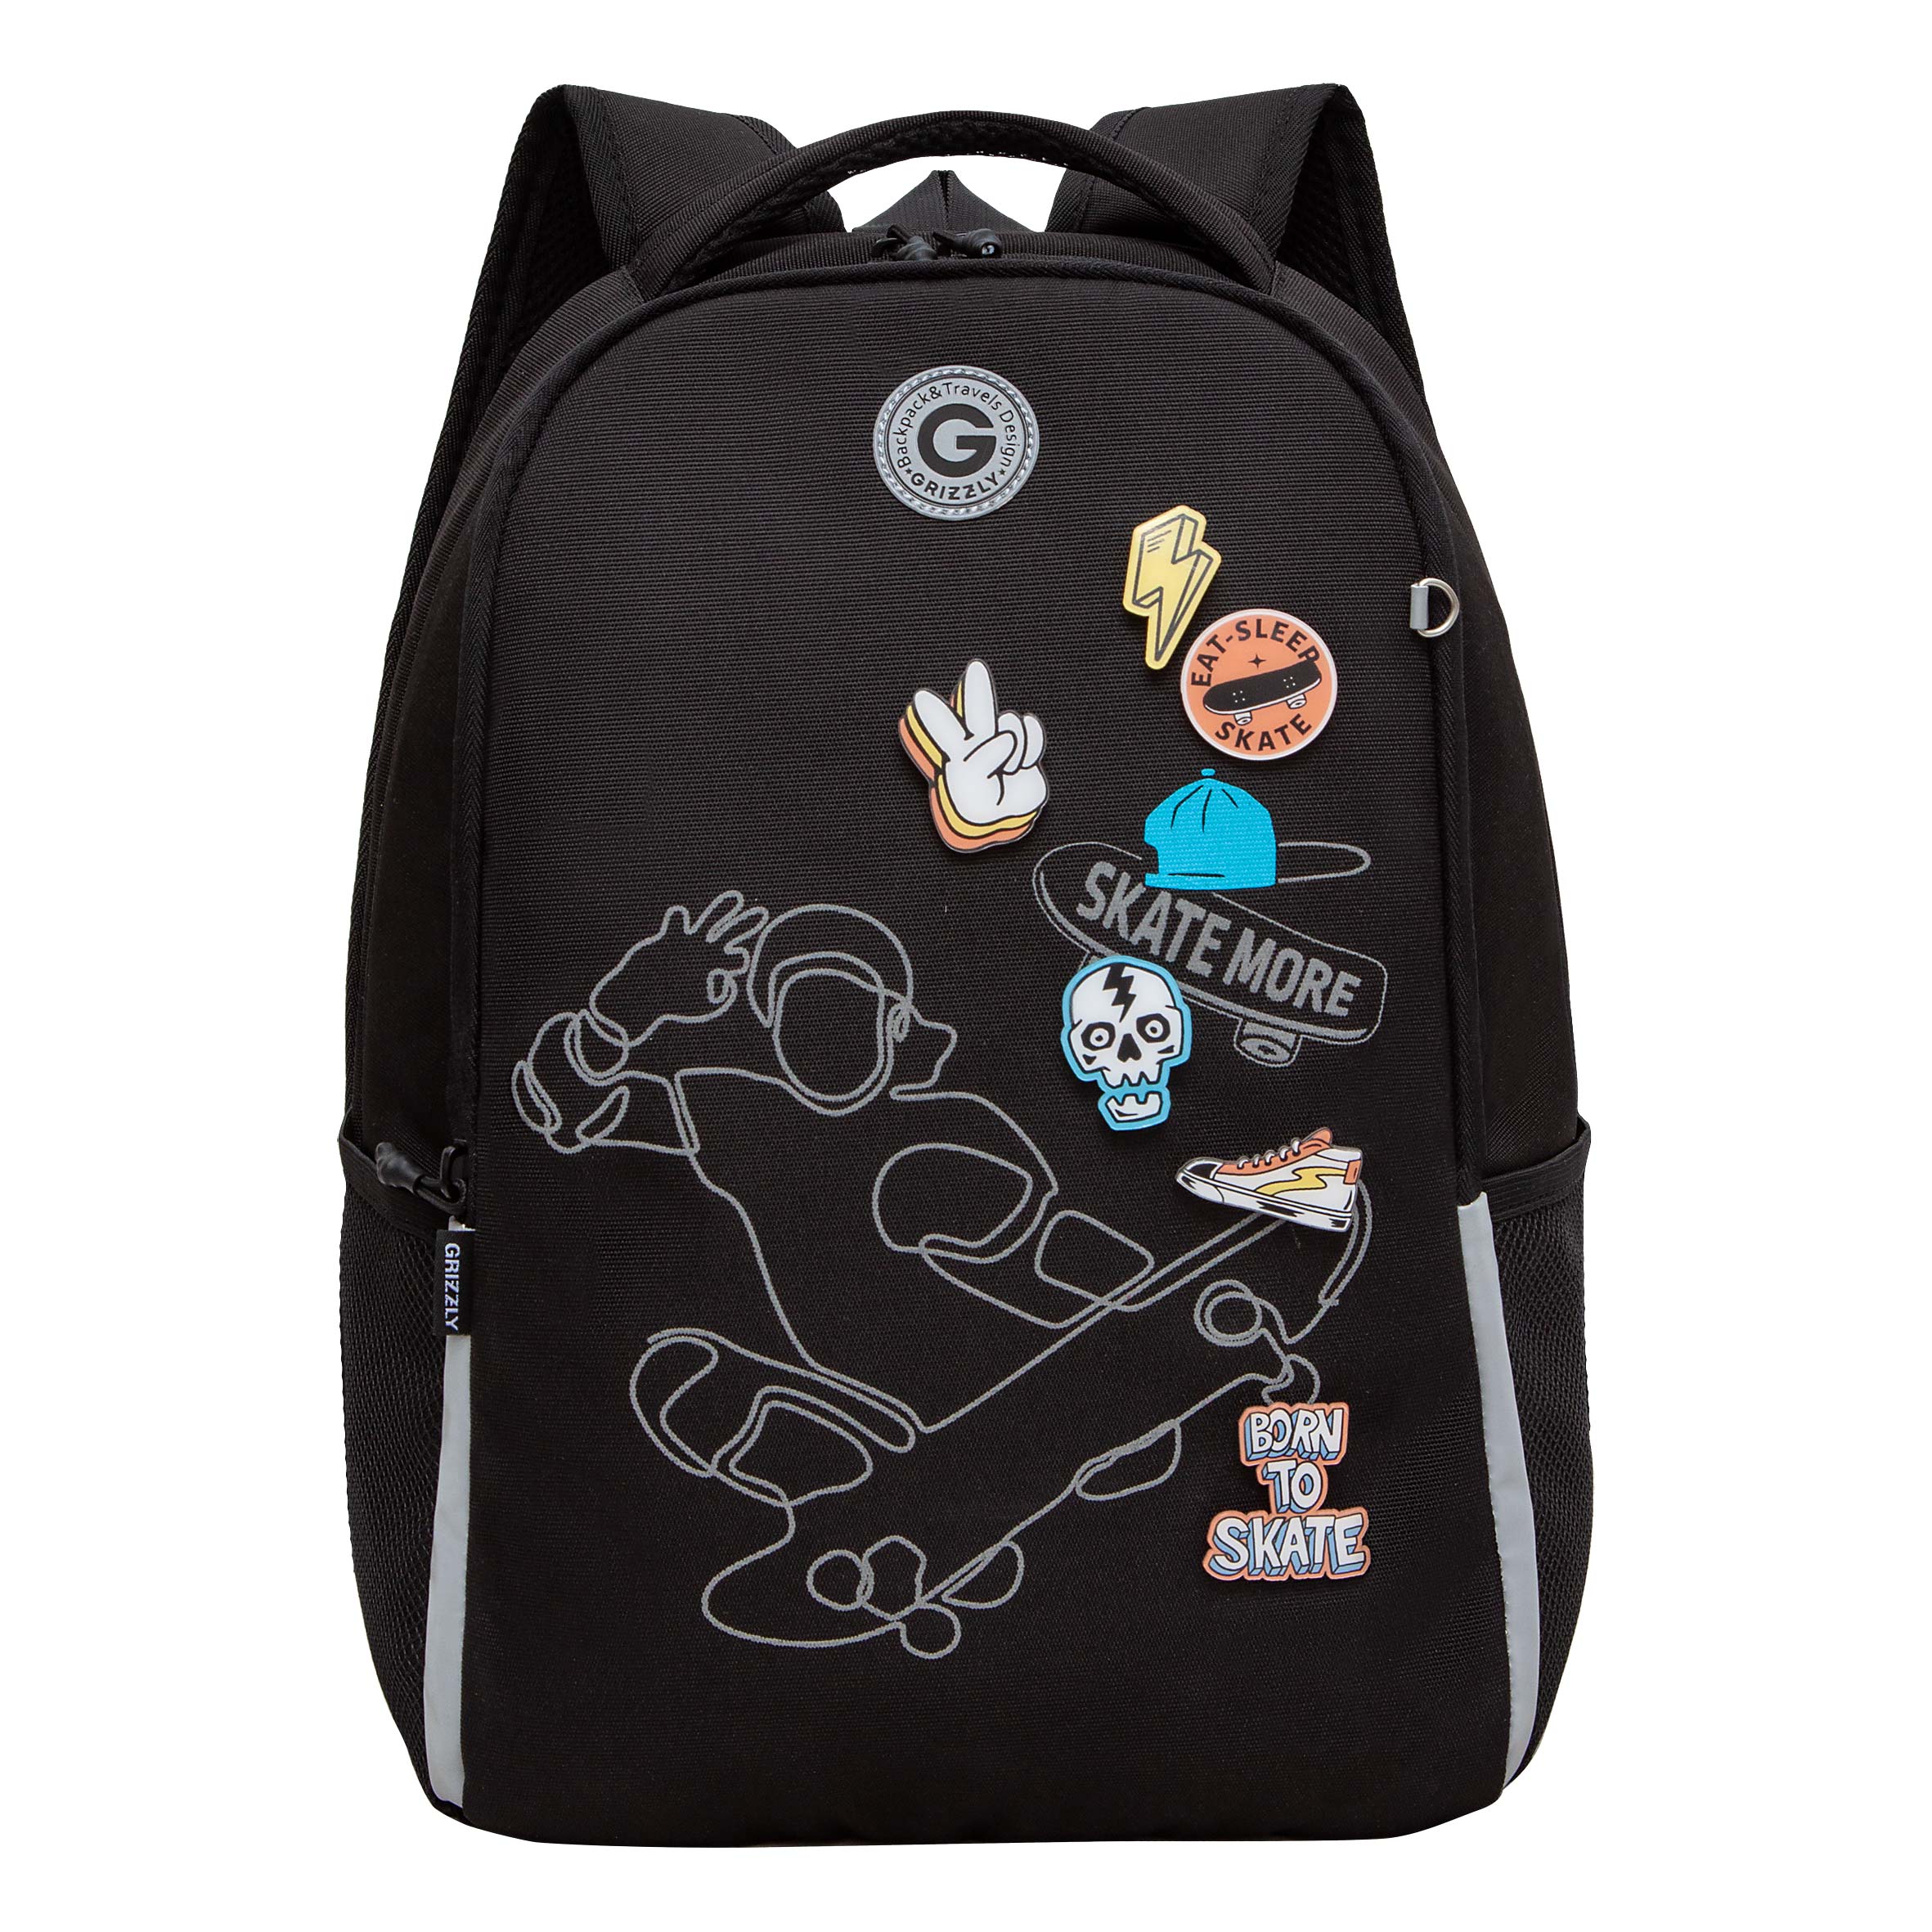 Рюкзак школьный Grizzly Легкий, жесткая спинка, 2 отделения, черный рюкзак школьный grizzly с карманом для ноутбука 13 2 отделения для девочки rg 466 3 2